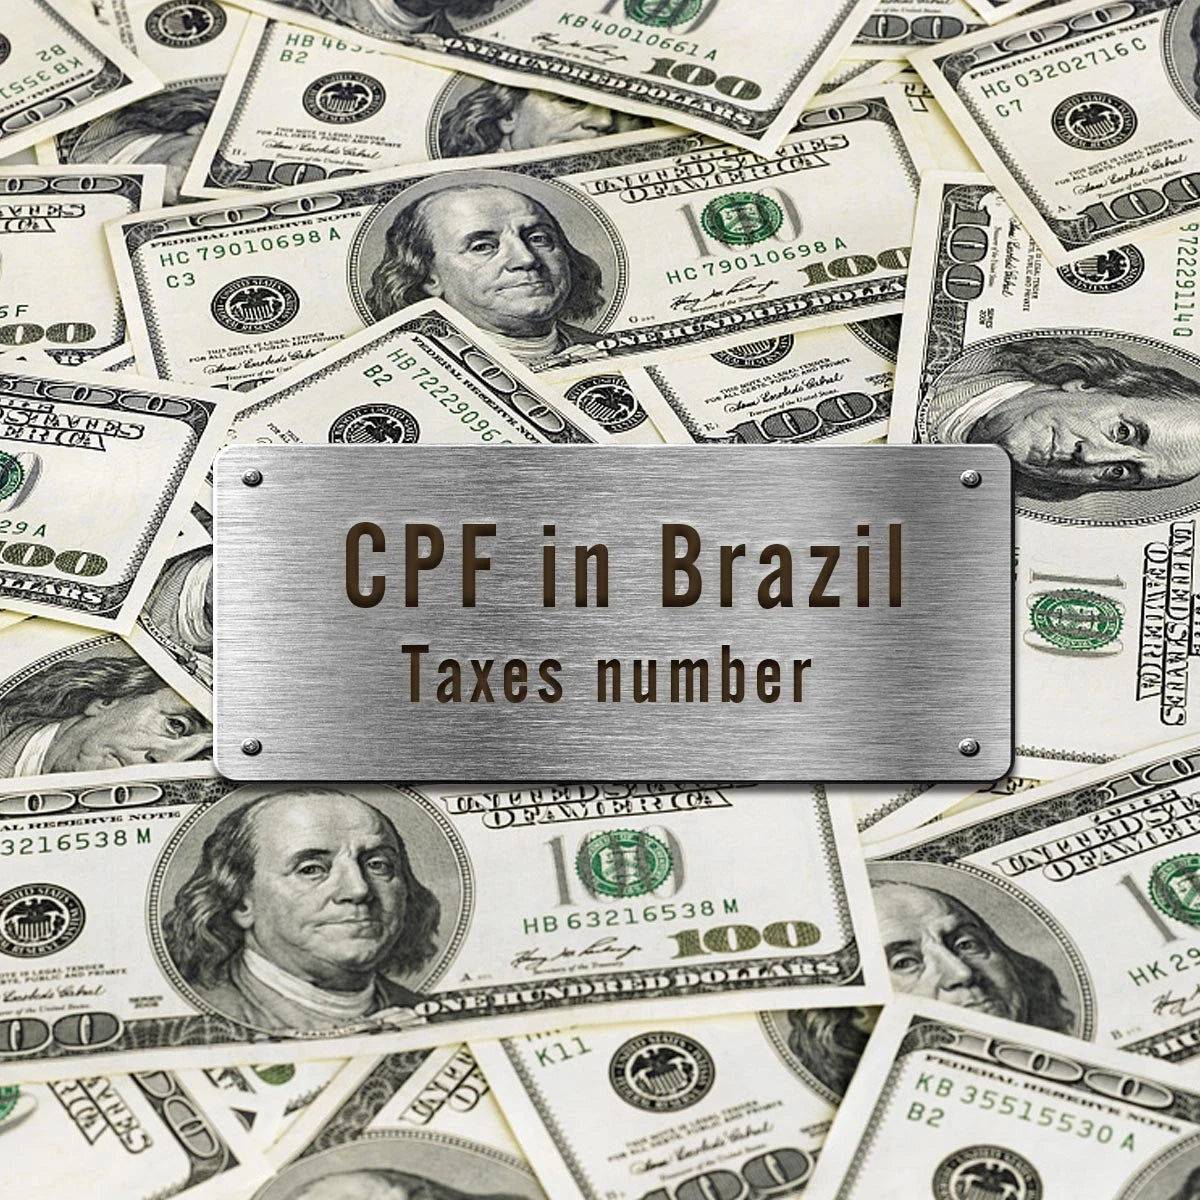 Todos os pedidos (Brasil) precisam do número de identificação fiscal (CPF)